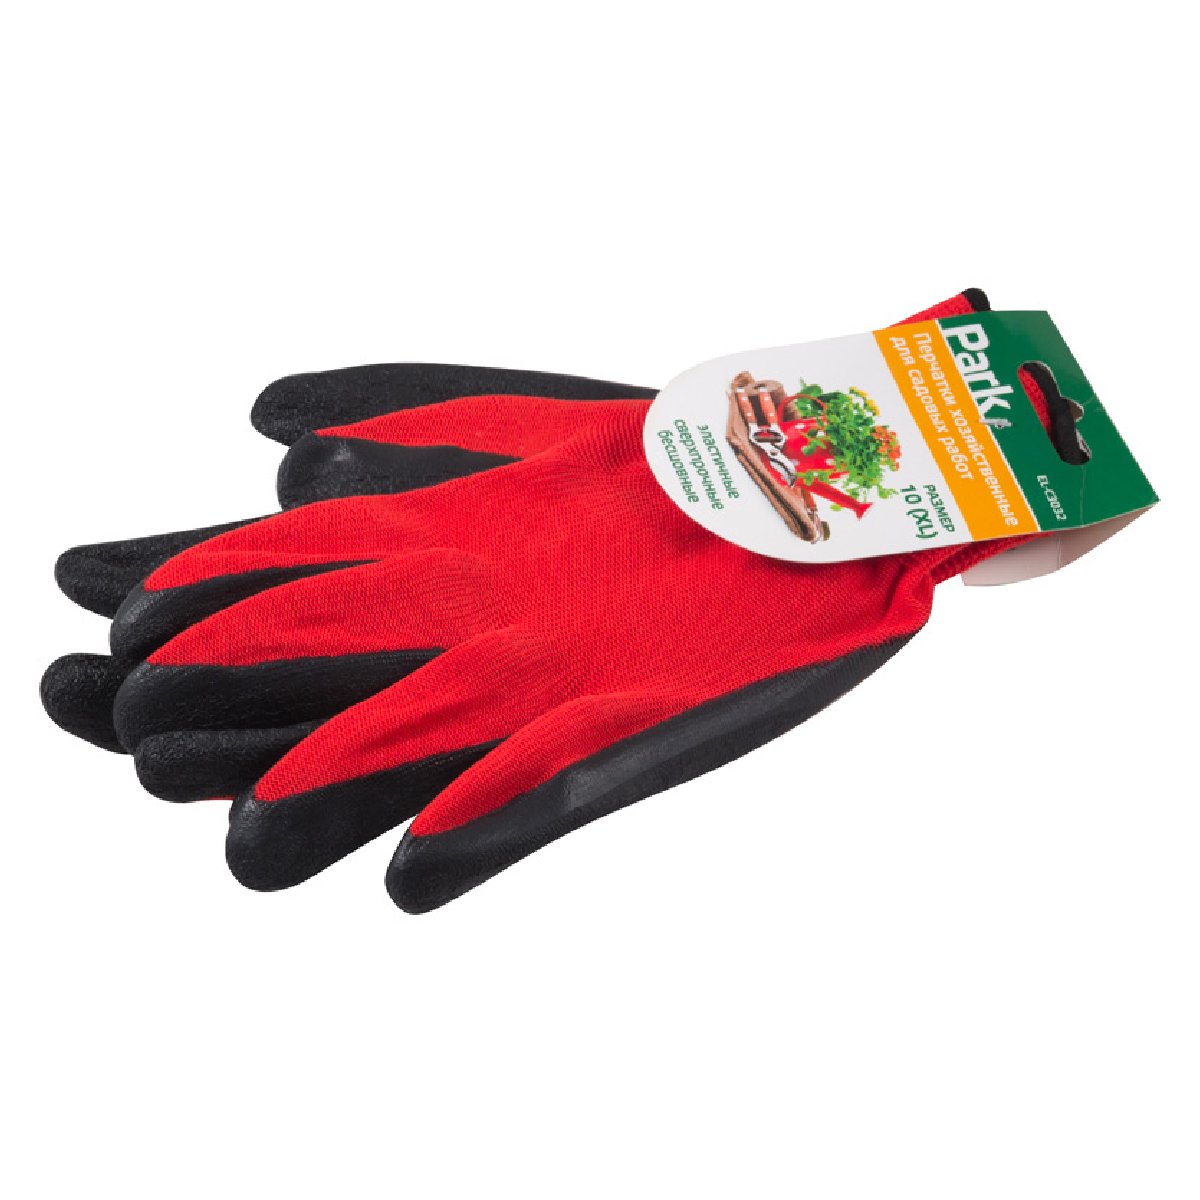 Перчатки хозяйственные PARK EL-C3032, размер 10 (XL), латекс+полиэстер, цвет красный с серым (001059)Купить